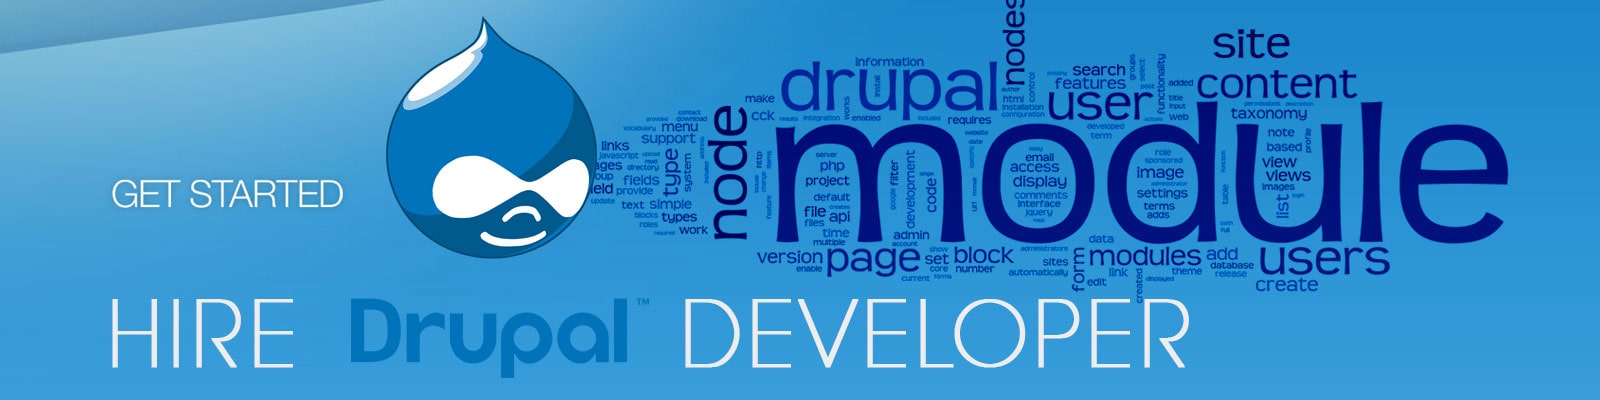 hire drupal application